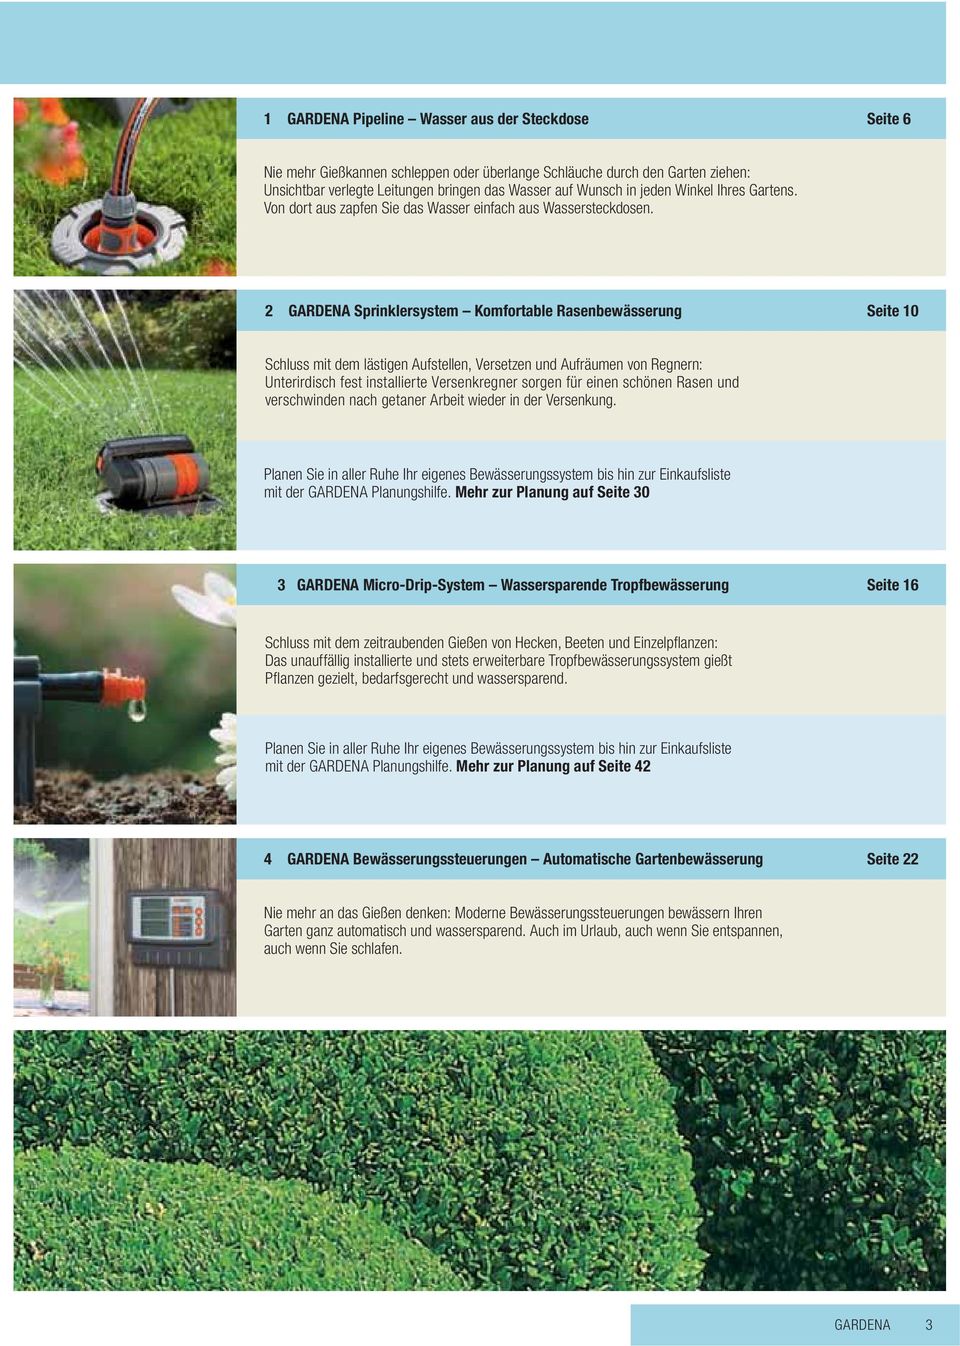 2 GARDENA Sprinklersystem Komfortable Rasenbewässerung Seite 10 Schluss mit dem lästigen Aufstellen, Versetzen und Aufräumen von Regnern: Unterirdisch fest installierte Versenkregner sorgen für einen